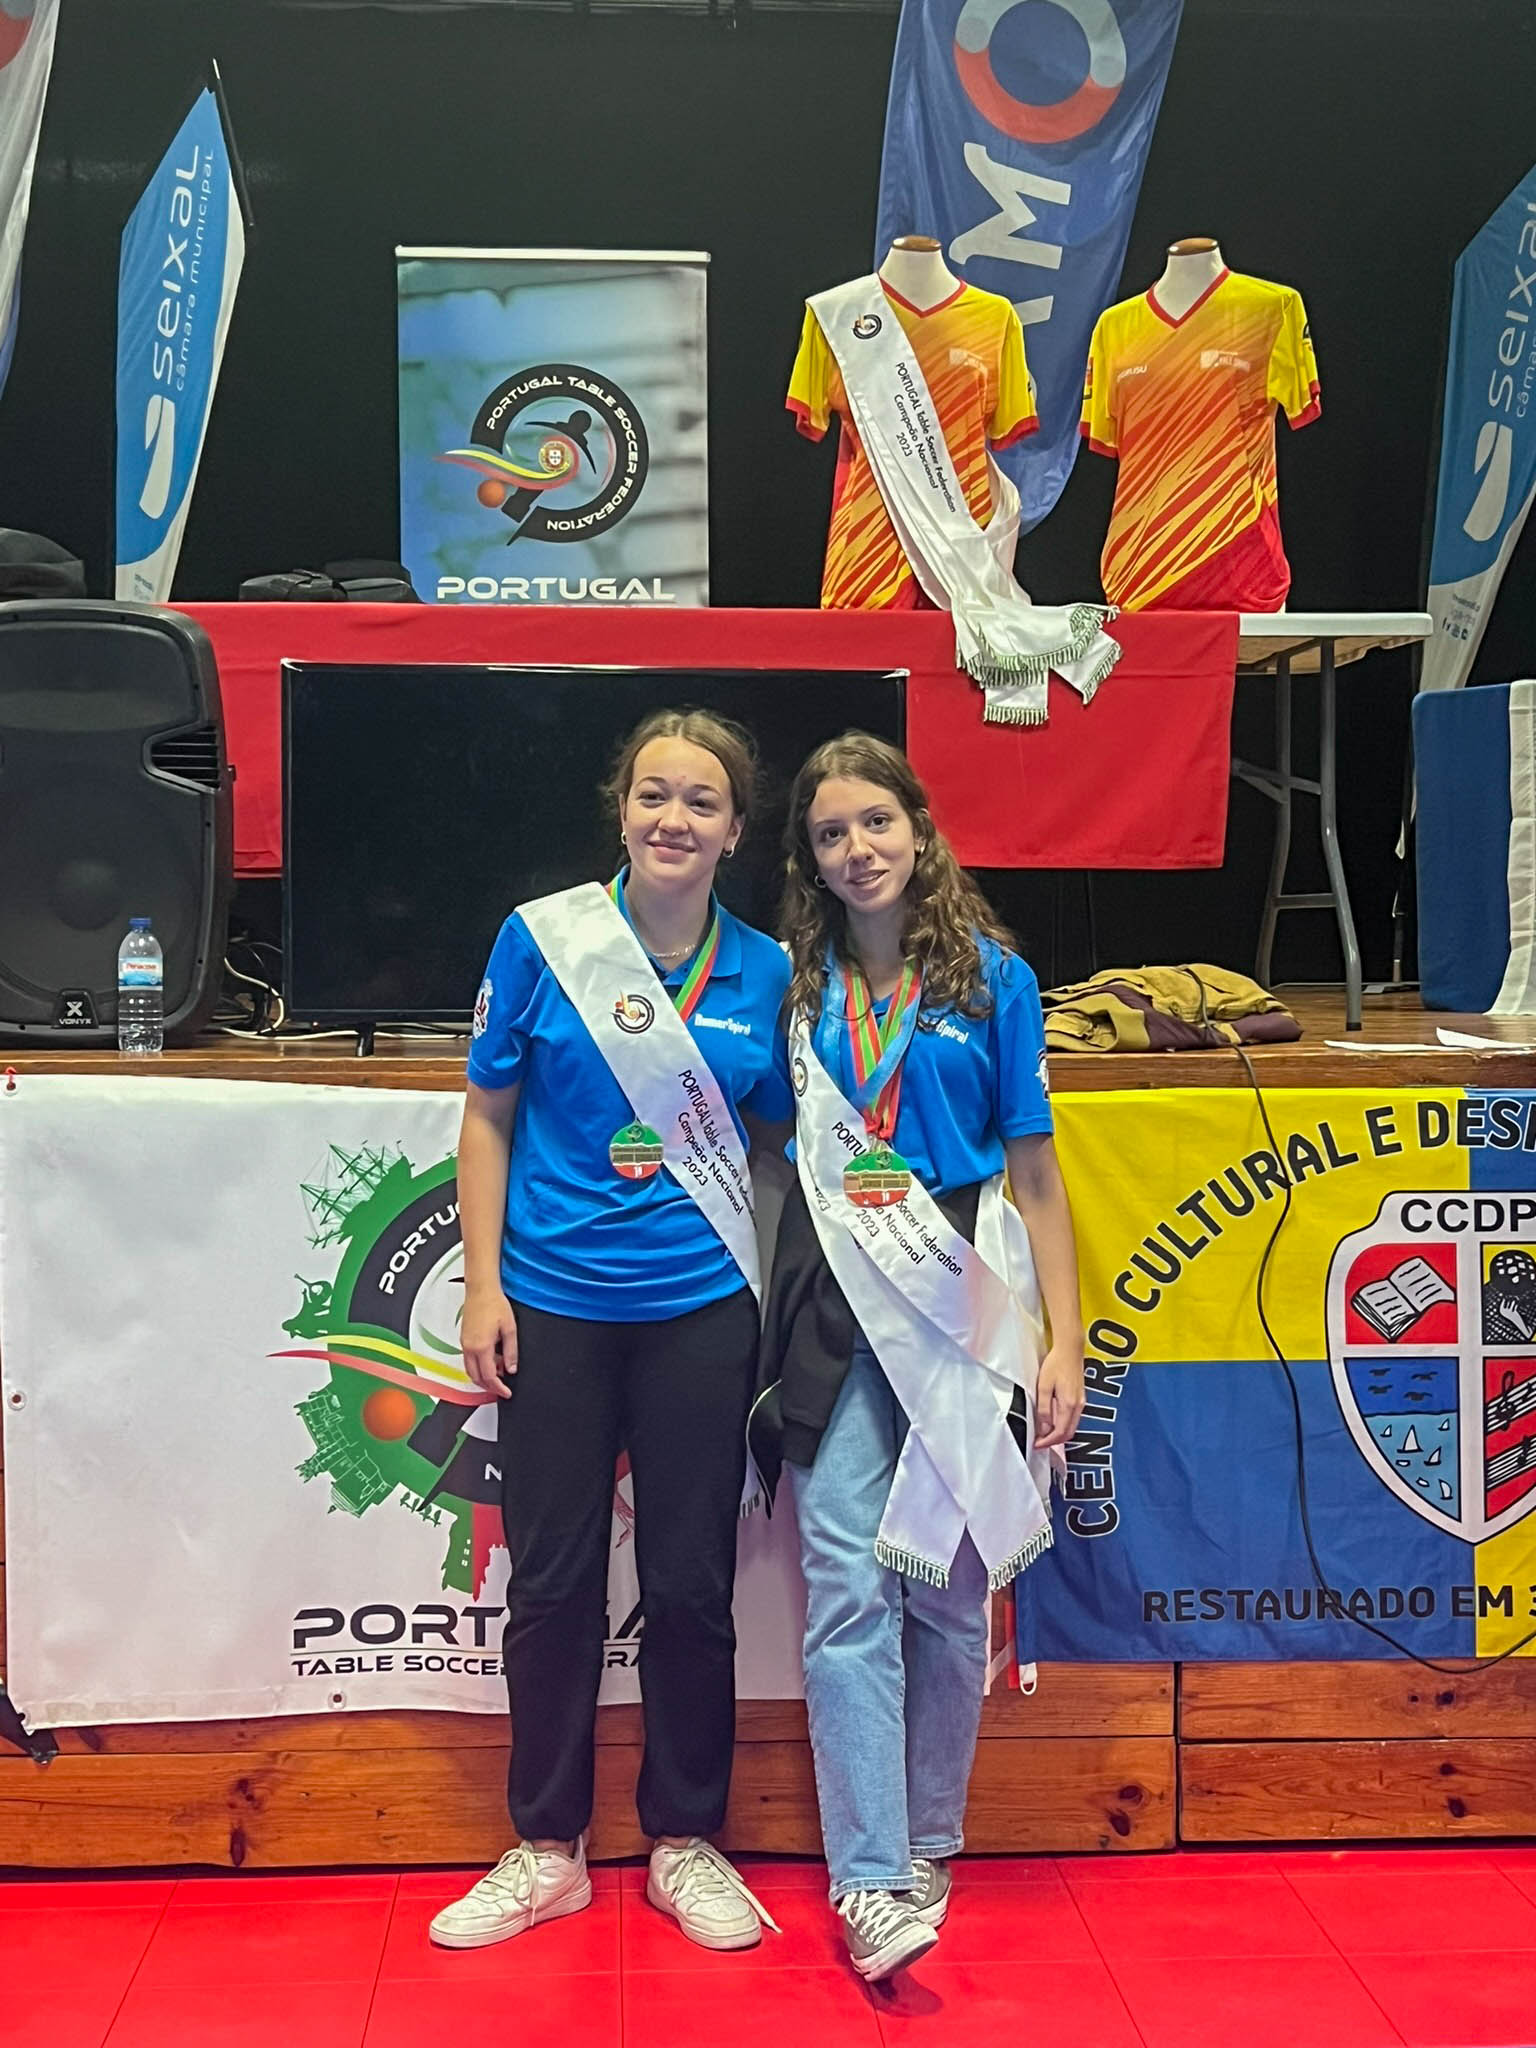 Maria Franco e Matilde Cortinhas campeãs nacionais Junior Doubles